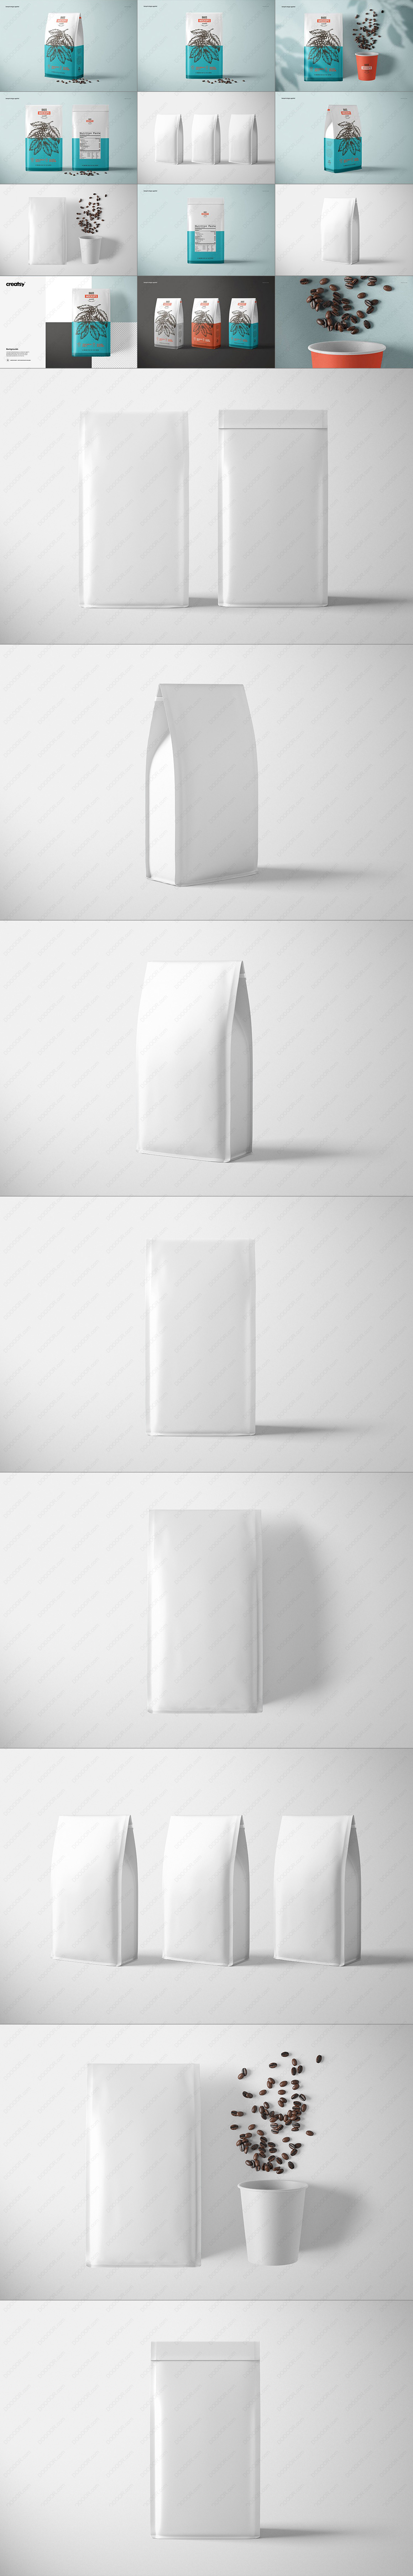 8视角纸咖啡包装袋样机PSD模板素材.jpg